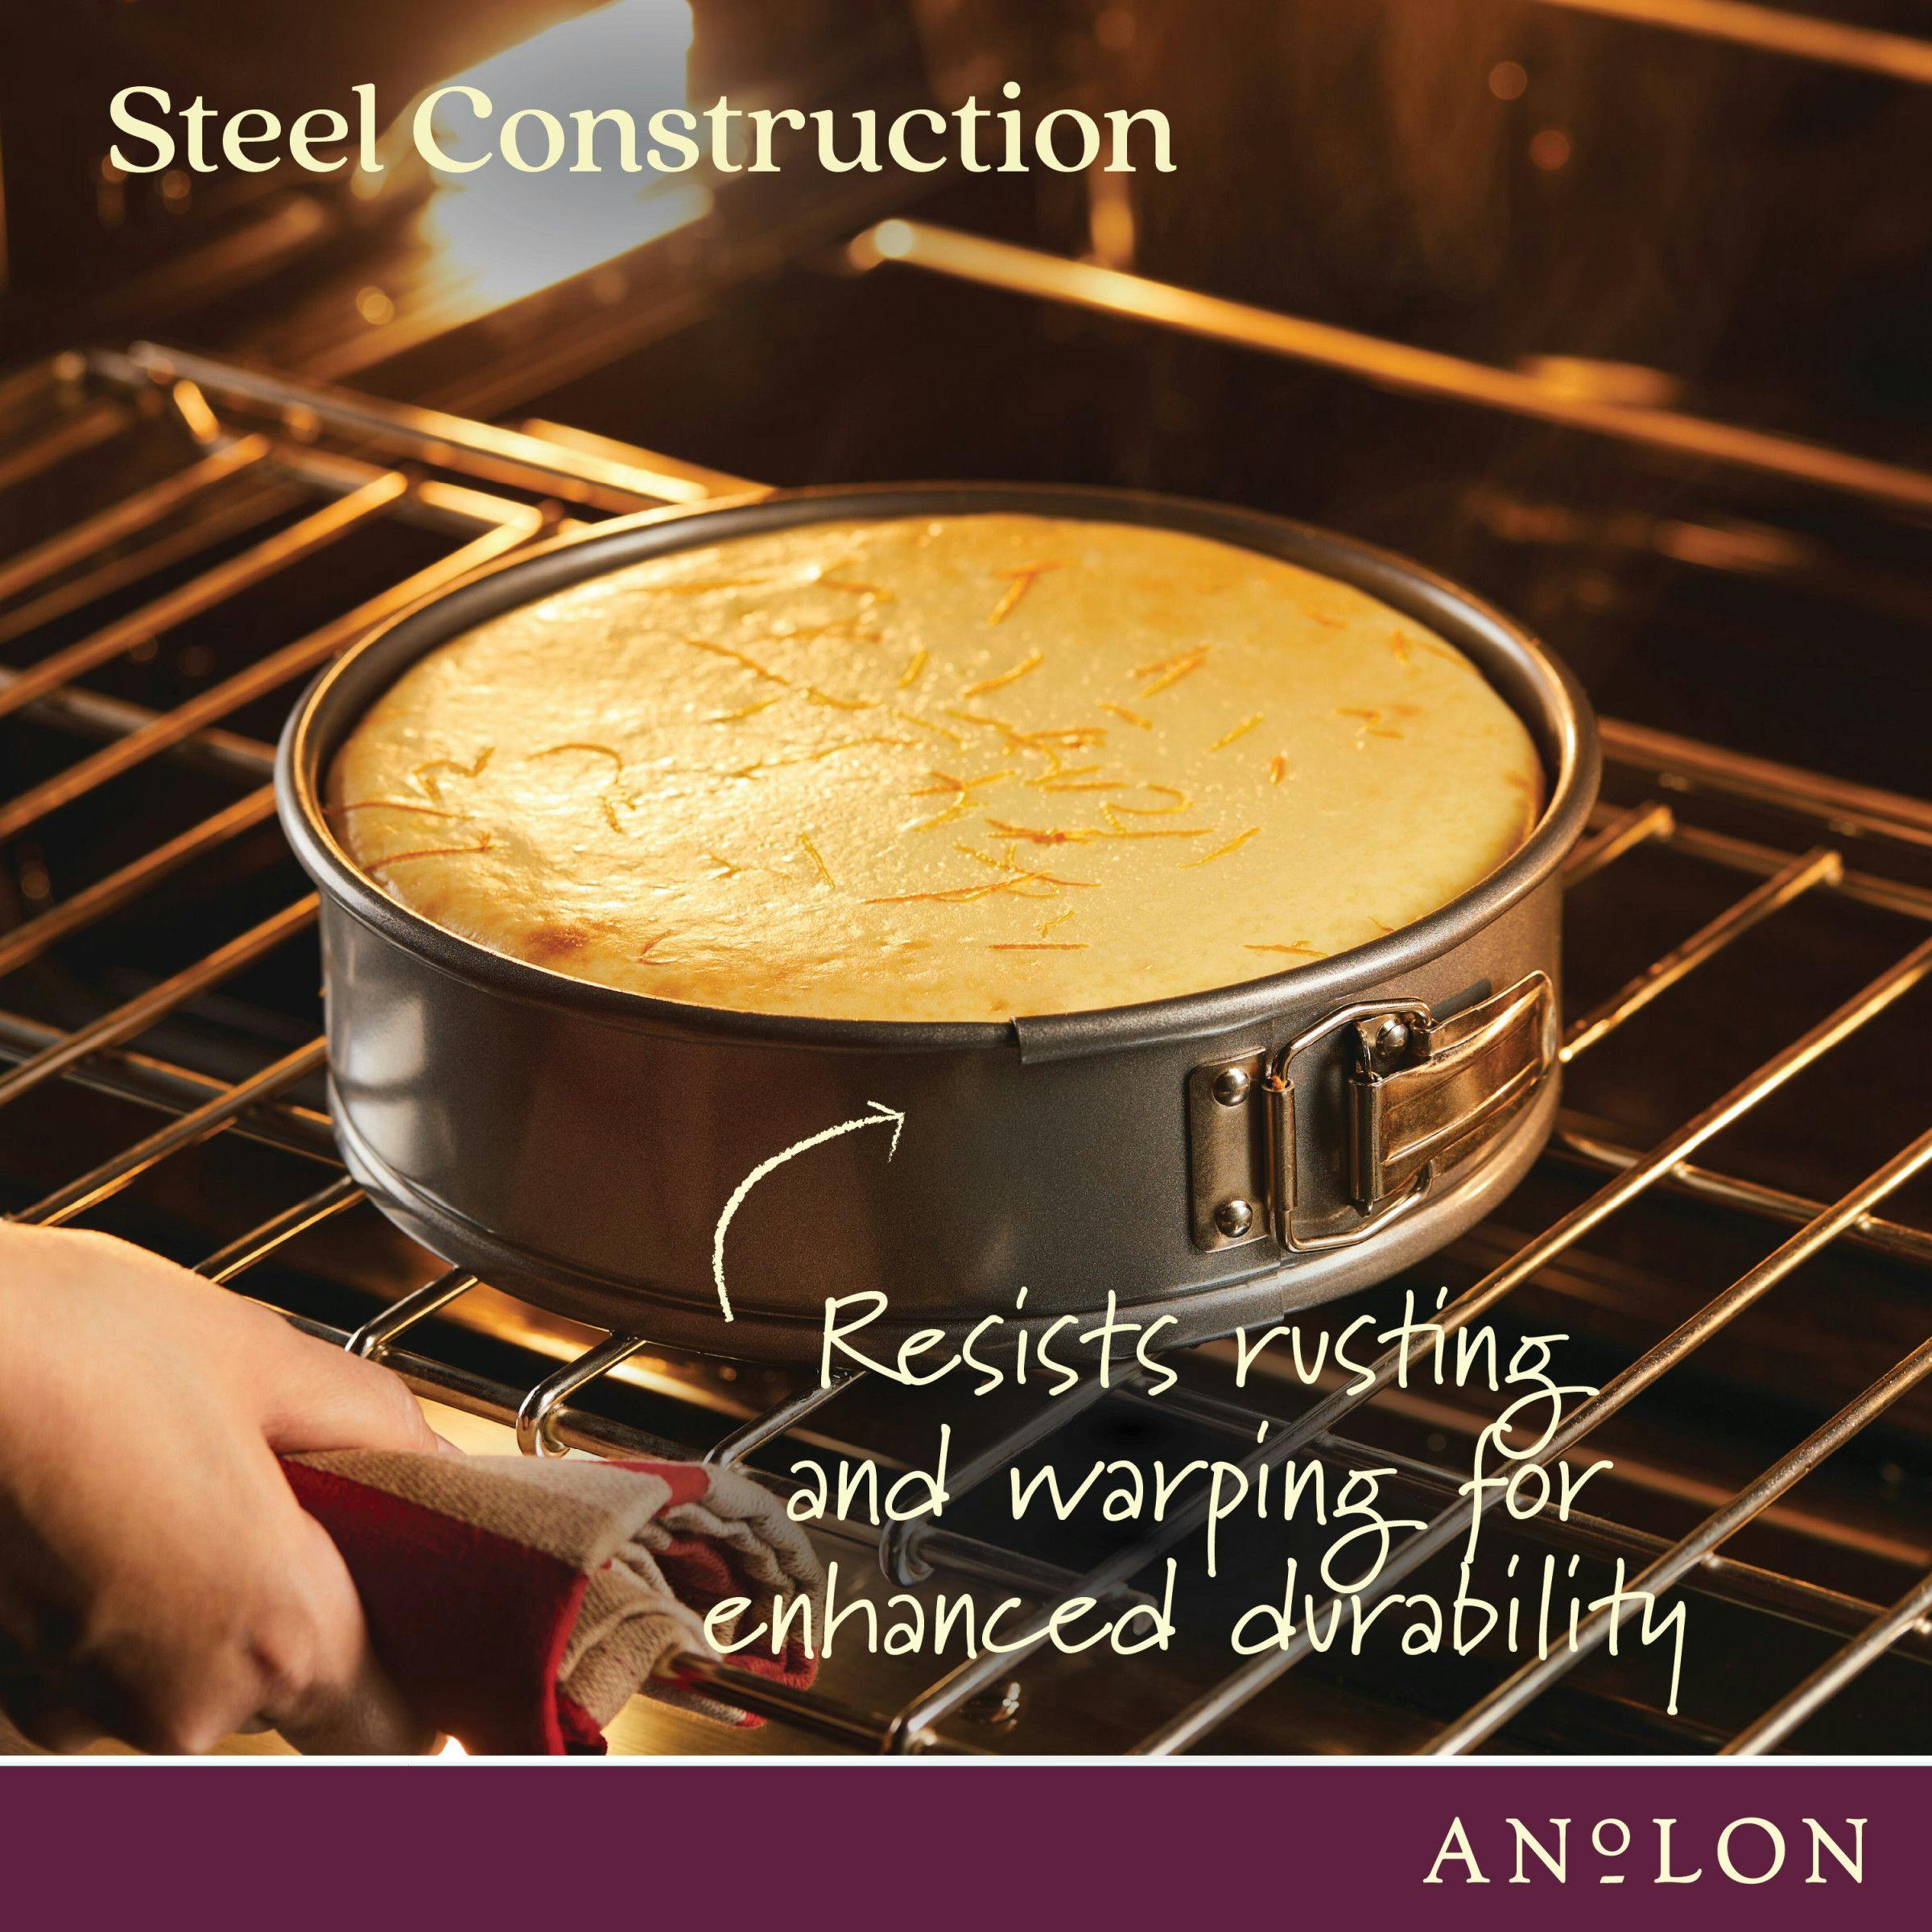 Anolon Advanced Bakeware Nonstick Springform Pan, 9-Inch, Gray